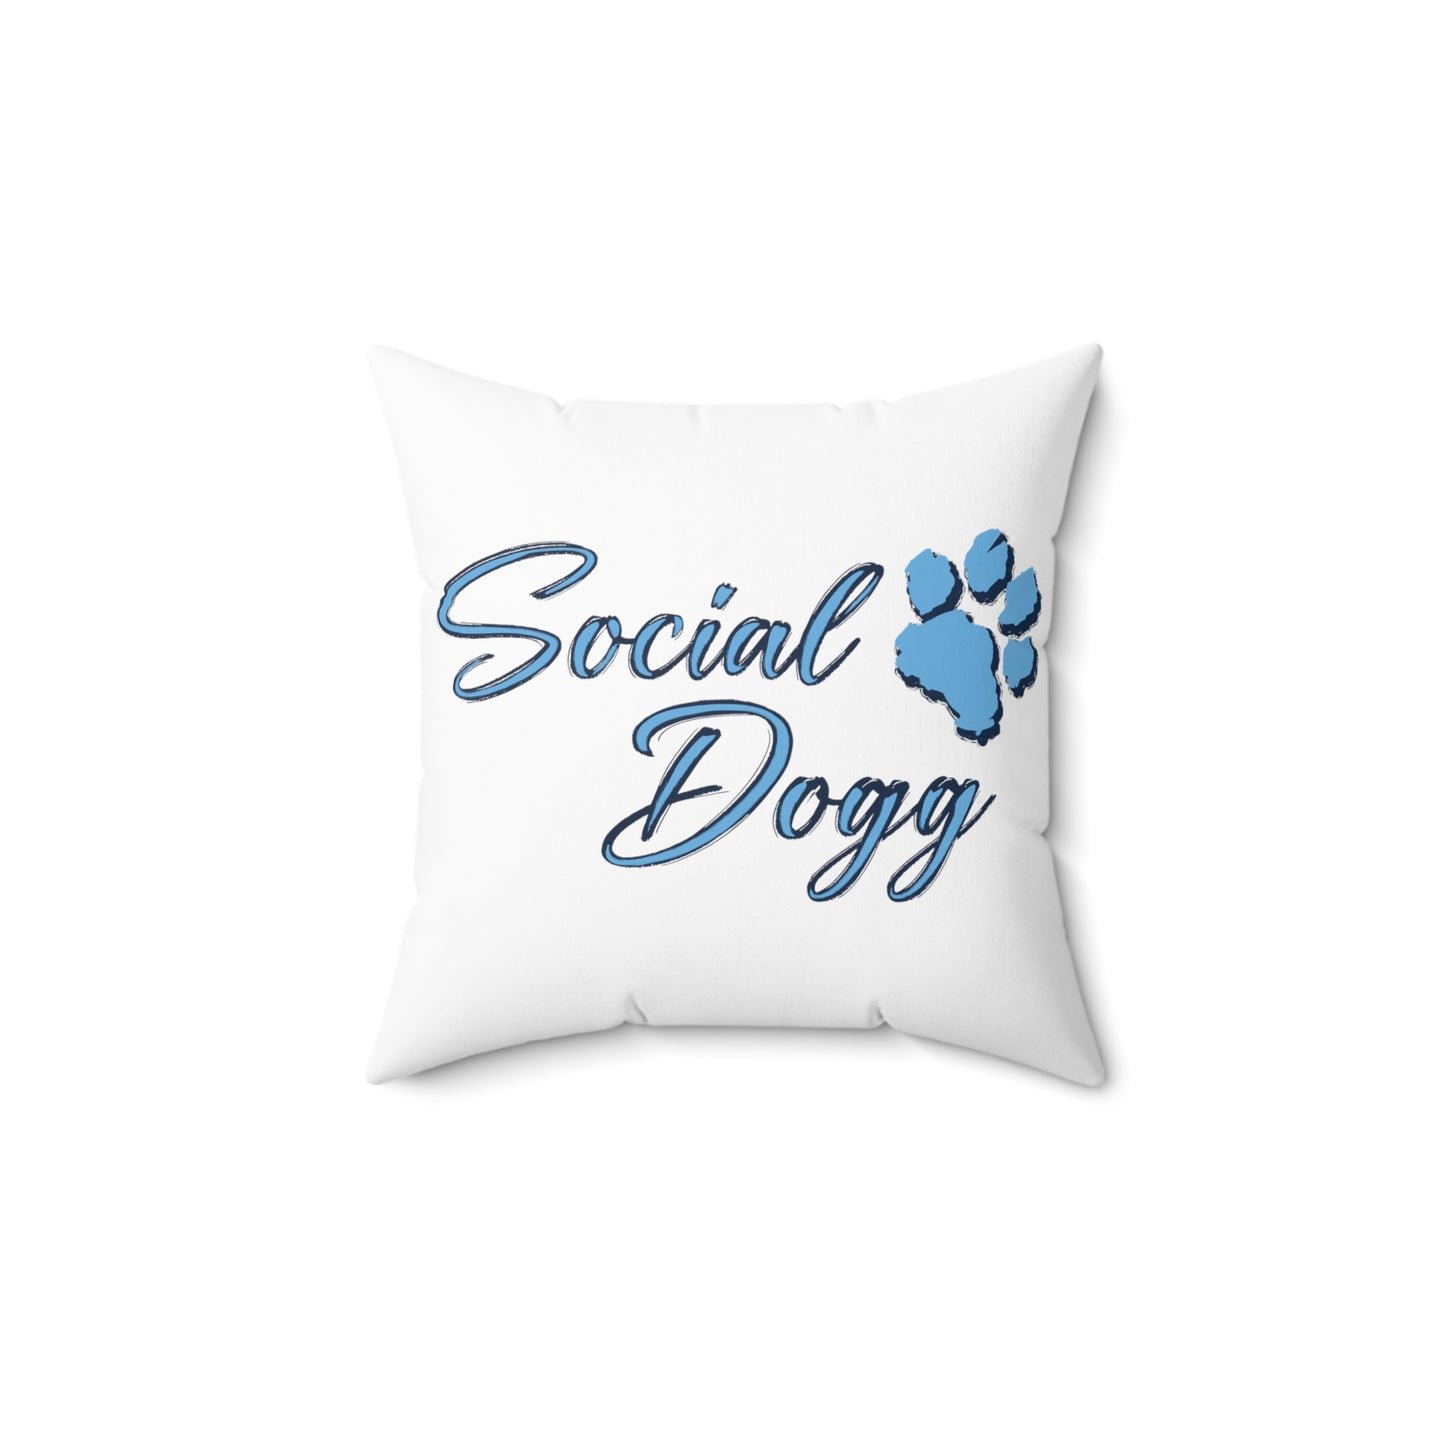 Labrador Love - Comforting Labrador Retriever Decorative Pillow